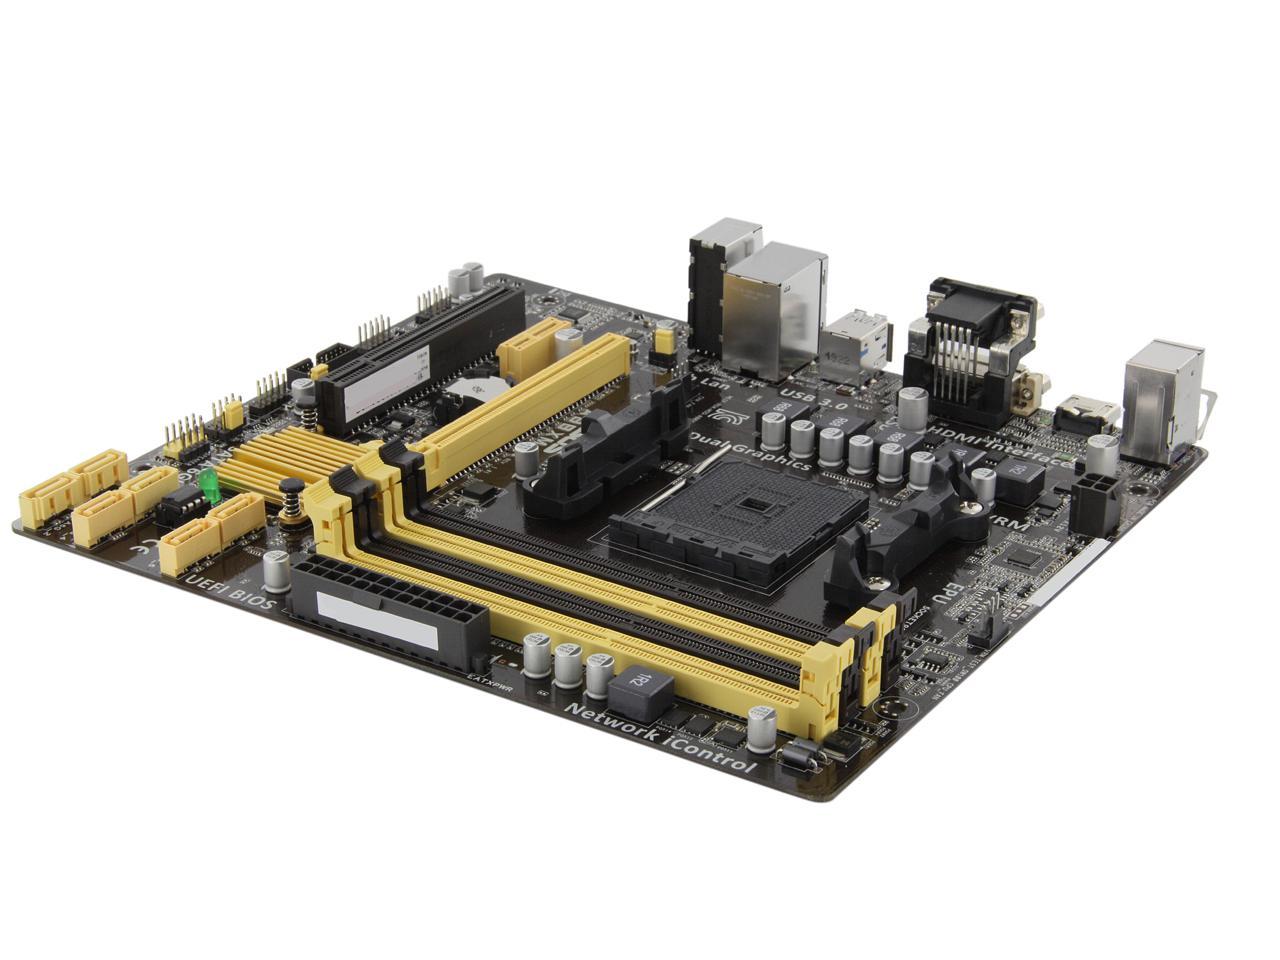 ASUS A88XM-A FM2+ AMD A88X (Bolton D4) SATA 6Gb/s USB 3.0 HDMI Micro ATX  AMD Motherboard with UEFI BIOS